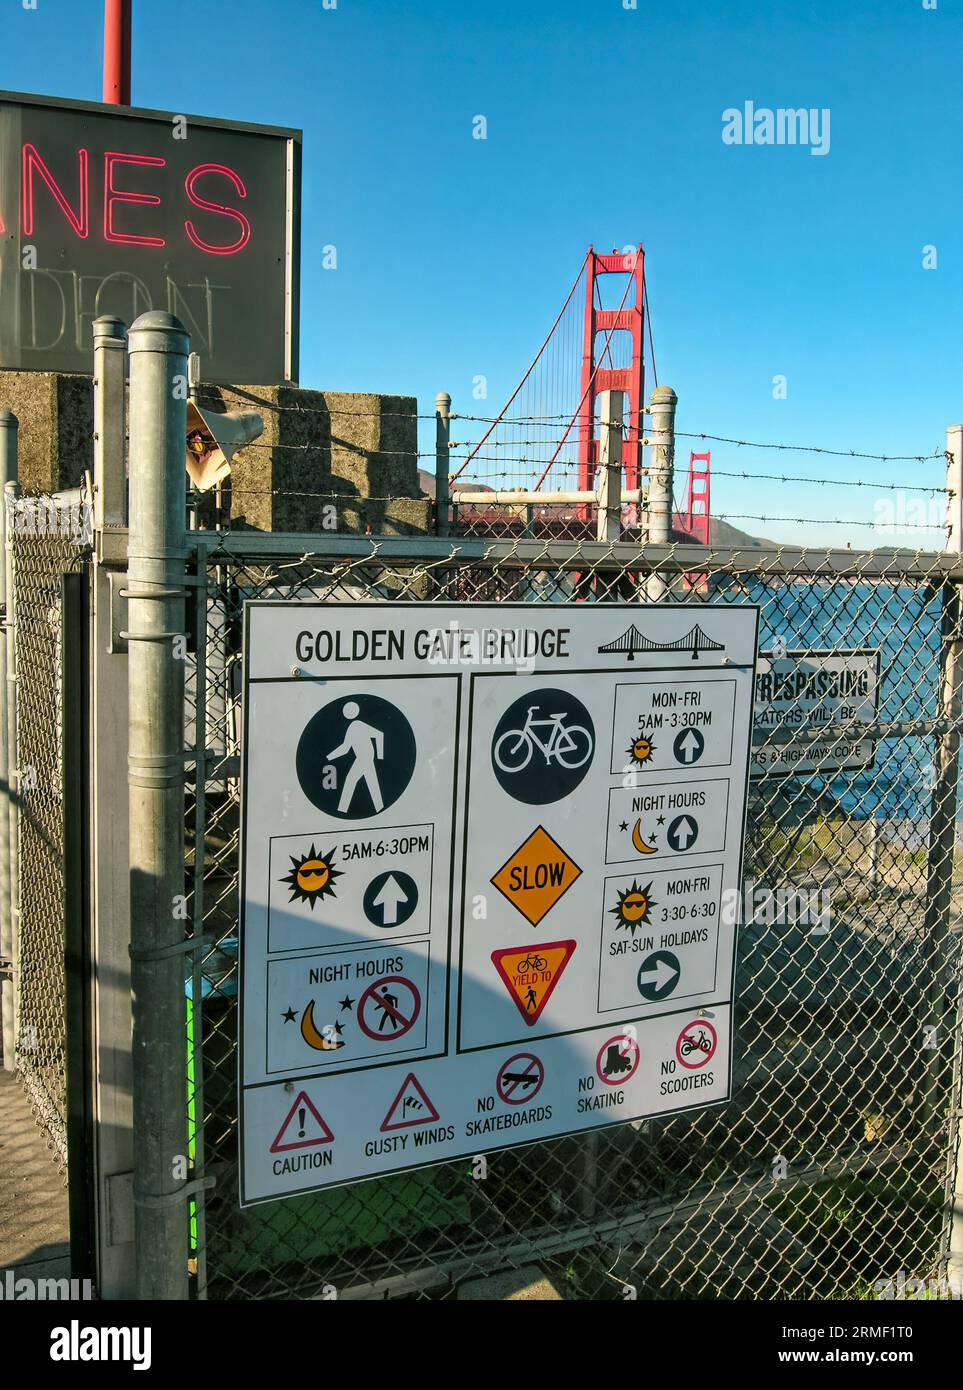 Un panneau sur le Golden Gate Bridge à San Francisco, en Californie, qui met en garde contre les intrusions, le skateboard, le skate et les scooters. Il met également en garde contre les rafales de vent. Banque D'Images